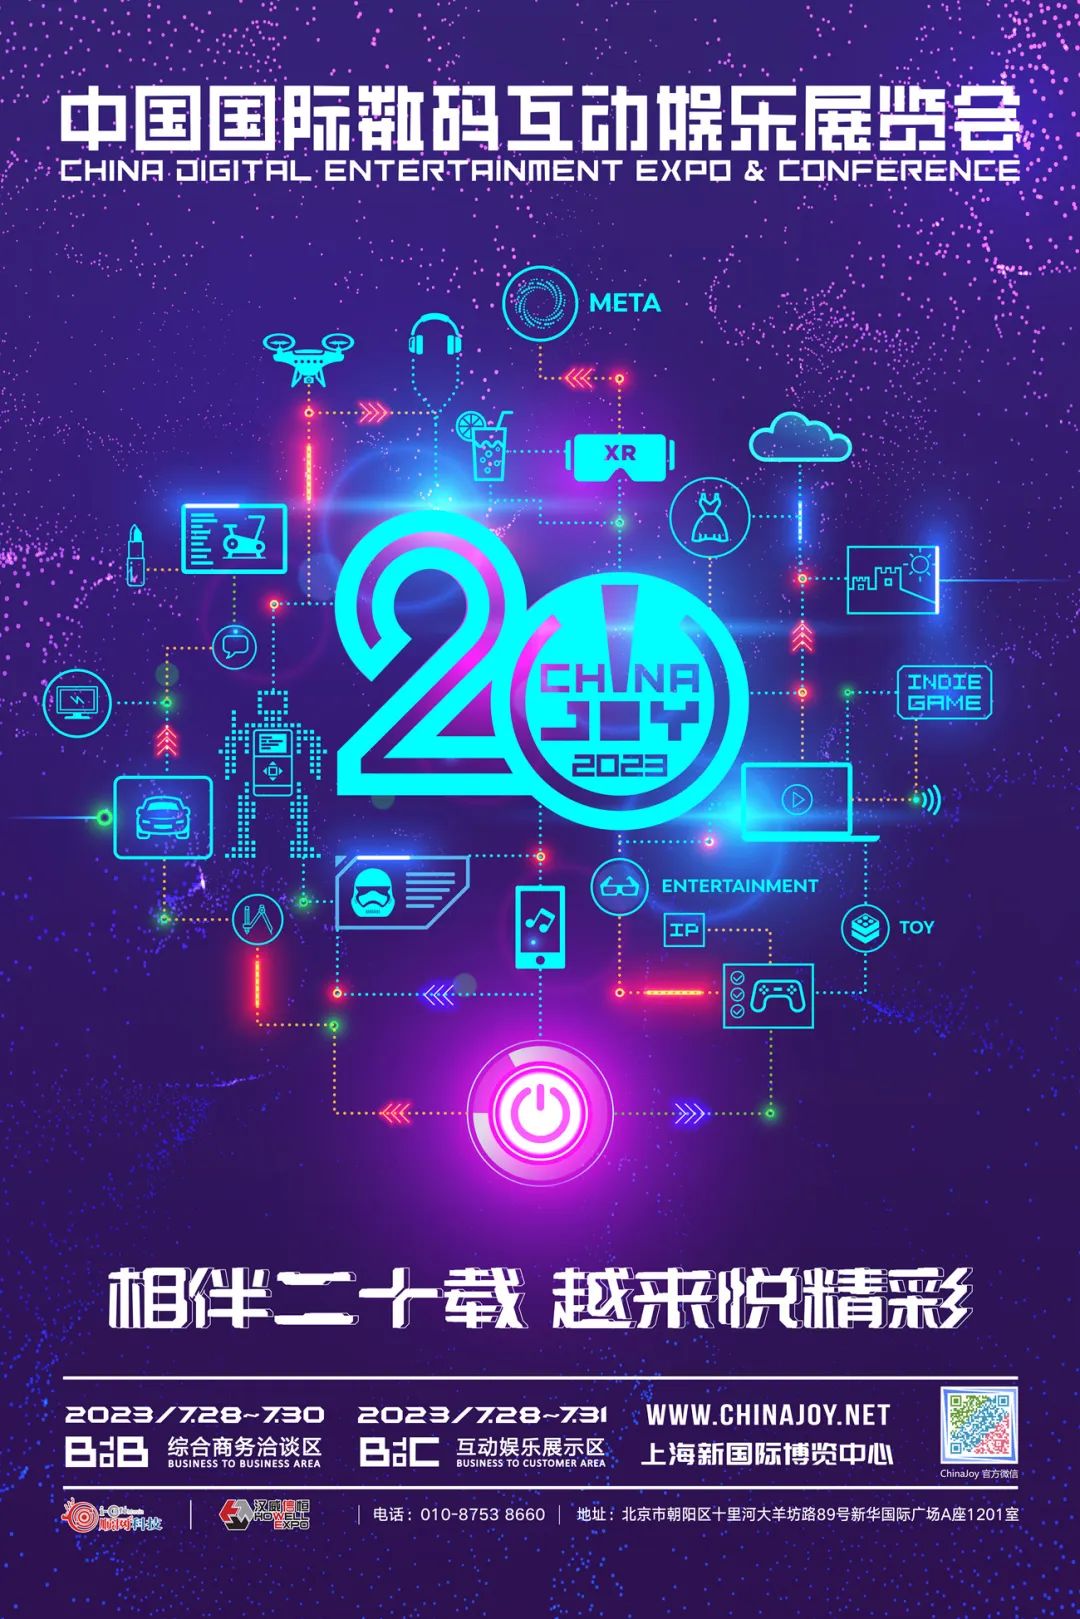 3 家企业成为 2023 年第二十届 ChinaJoy 第二批指定经纪公司